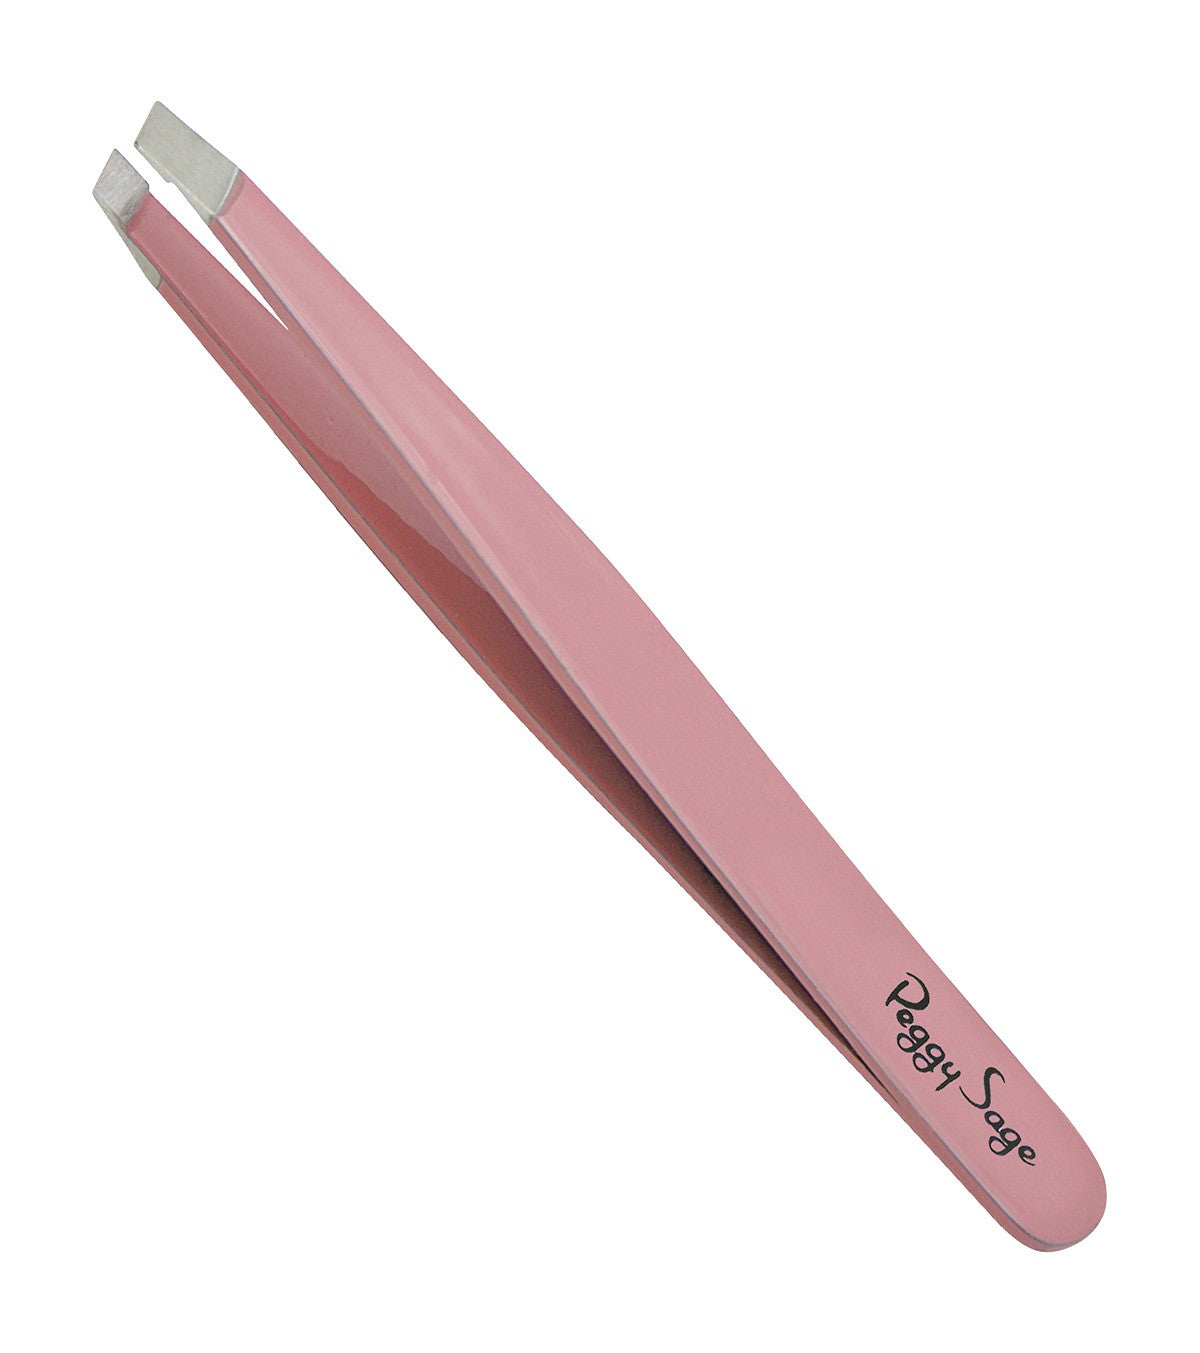 Epilation Tweezers - Pink Ref 300043